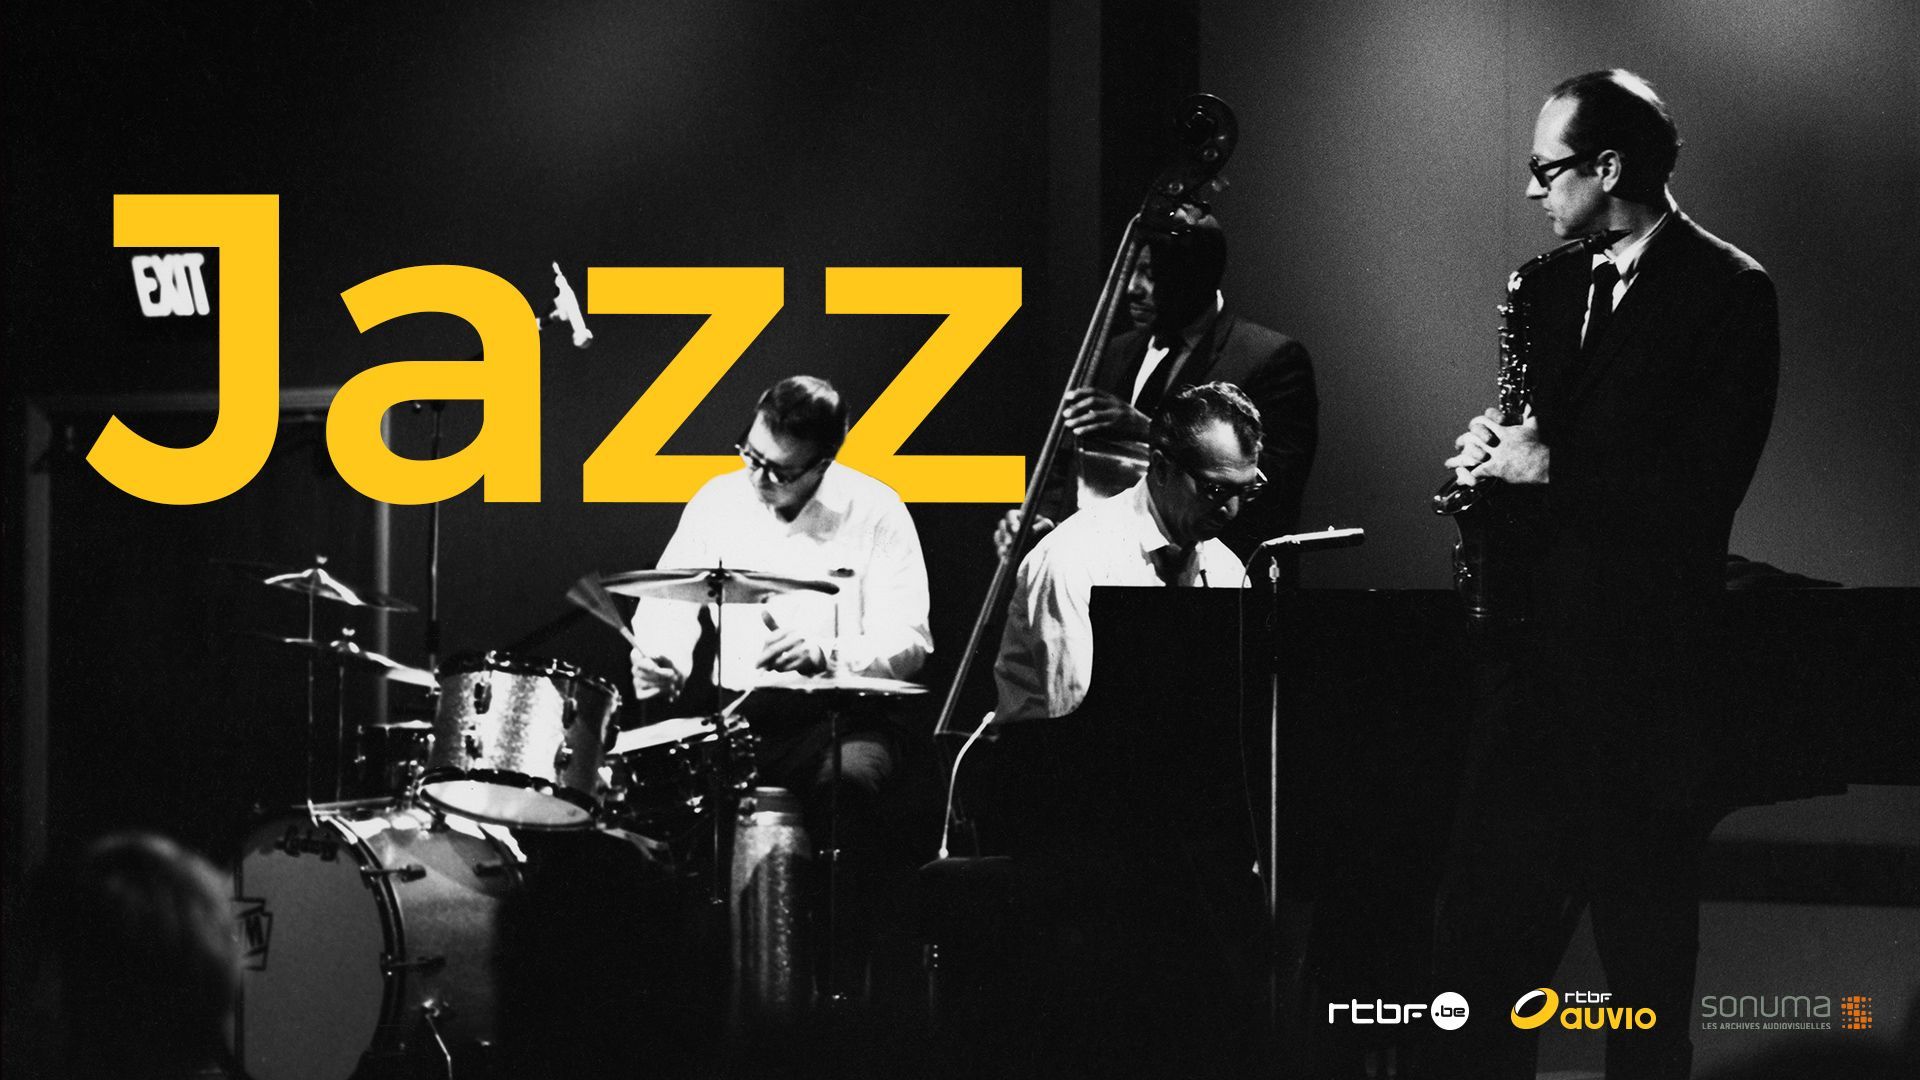 "Journée internationale du Jazz" ce jeudi 30 avril, la RTBF poursuit la mise en valeur de ses contenus Jazz